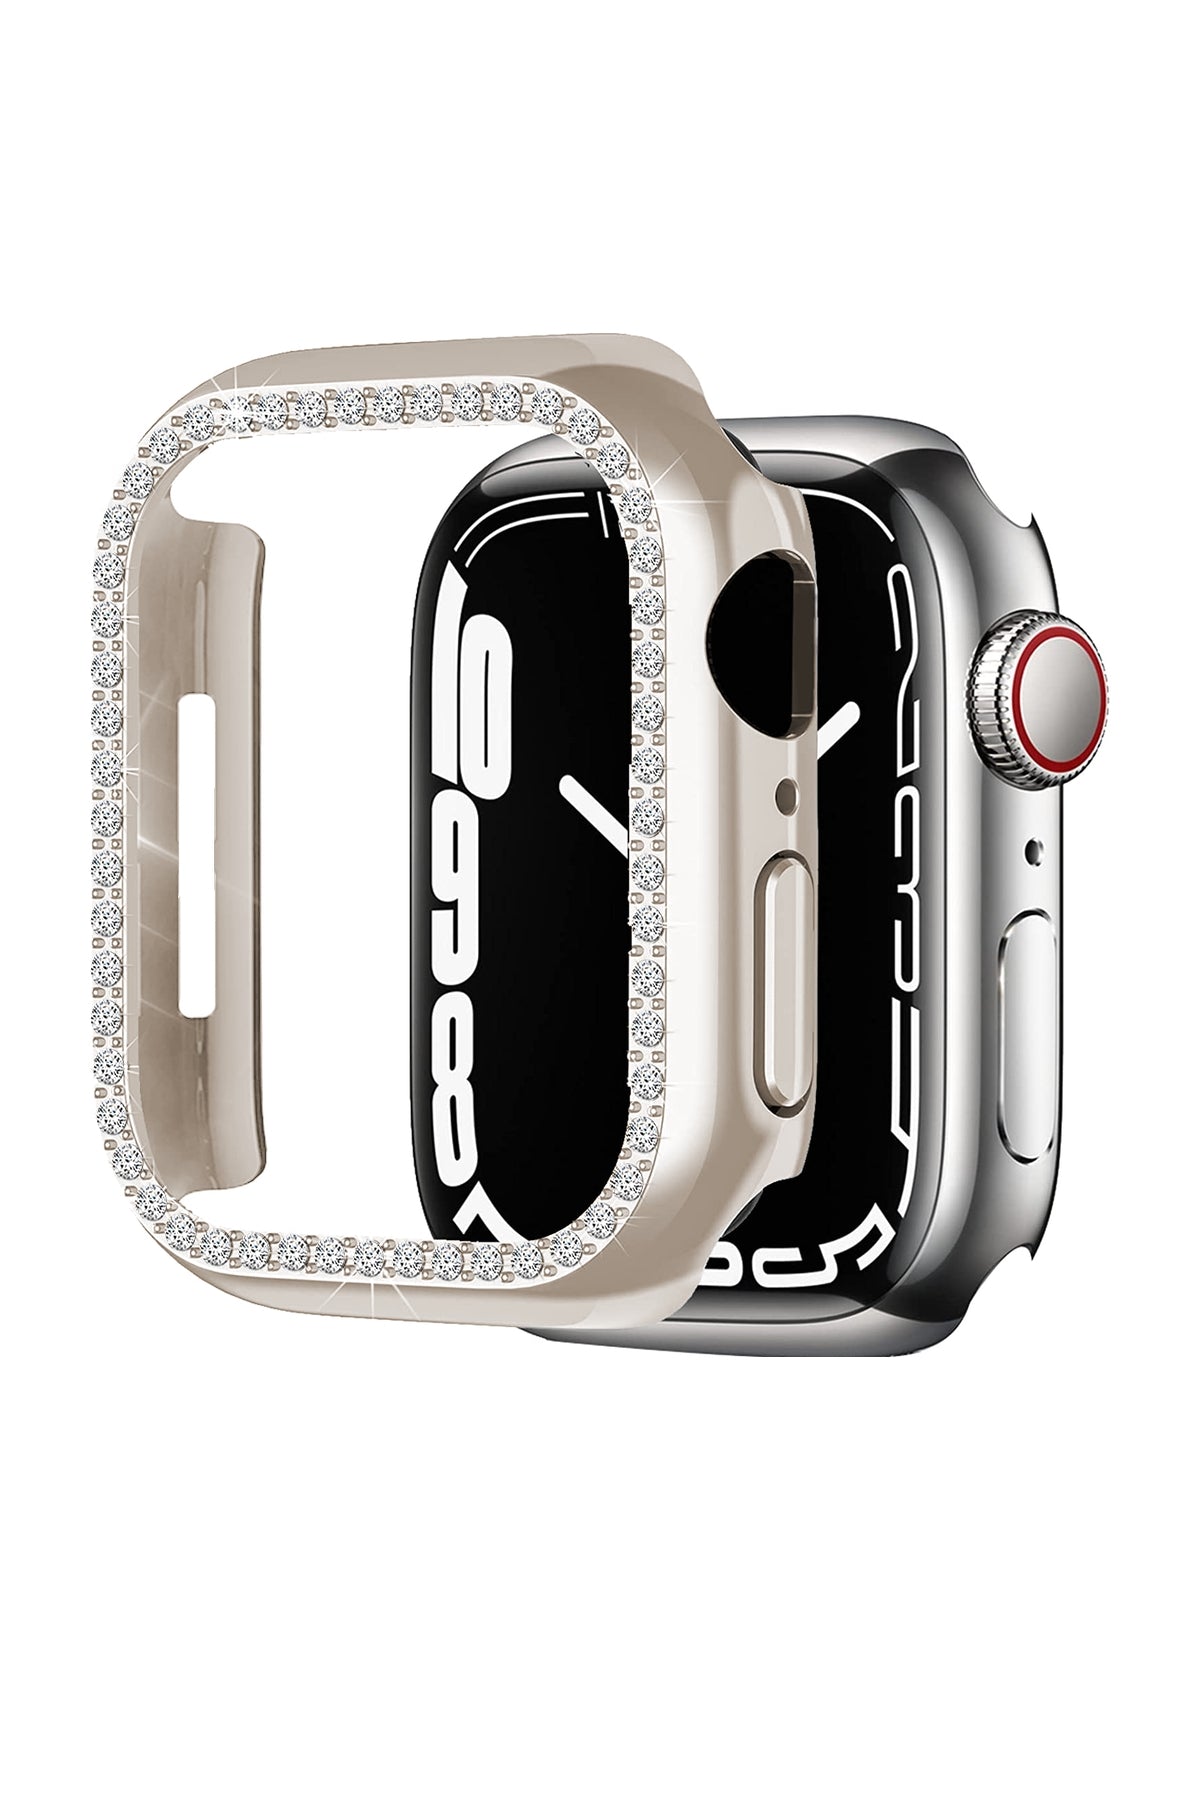 Apple Watch Uyumlu Bumper Parlak Taşlı Kasa Starlight